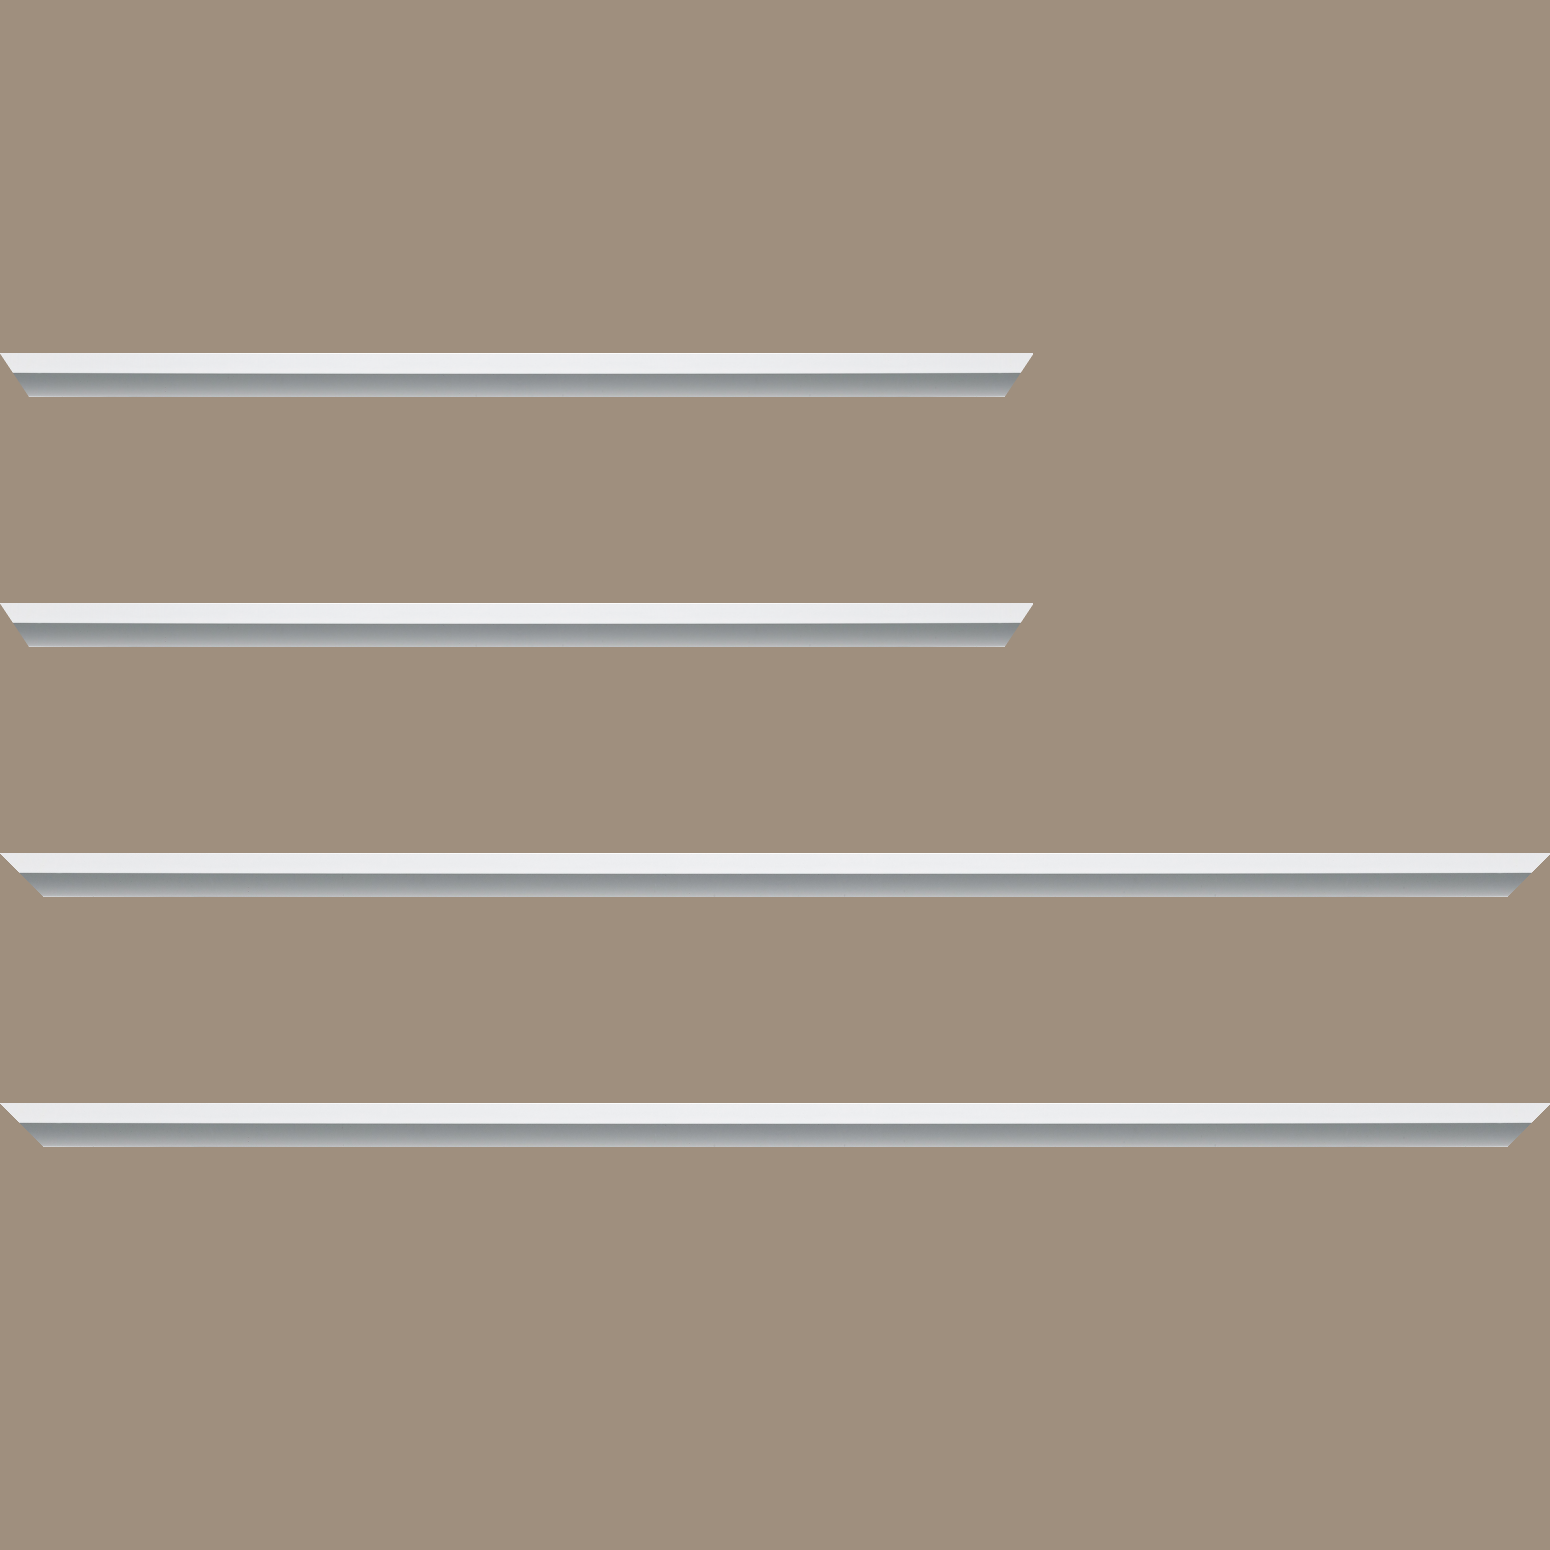 Baguette aluminium profil plat largeur 7mm, couleur blanc mat ,(le sujet qui sera glissé dans le cadre sera en retrait de 9mm de la face du cadre assurant un effet très contemporain) mise en place du sujet rapide et simple: assemblage du cadre par double équerre à vis (livré avec le système d'accrochage qui se glisse dans le profilé) encadrement non assemblé,  livré avec son sachet d'accessoires - 24x30